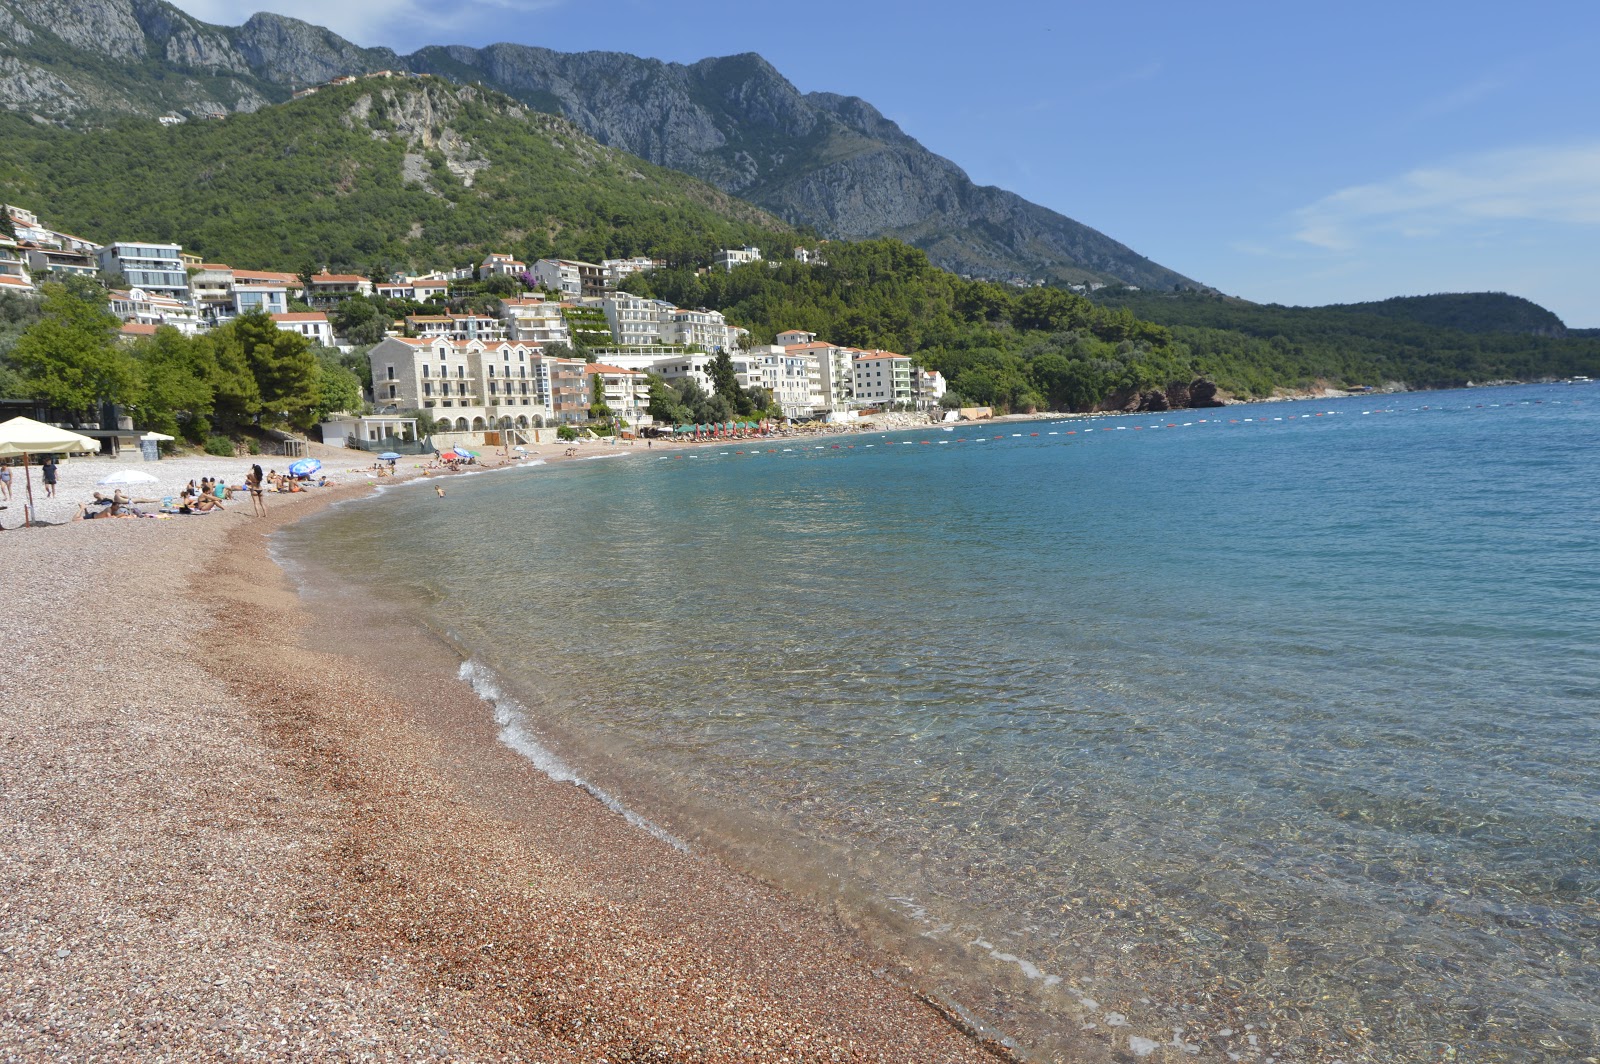 Zdjęcie Sveti Stefan beach - popularne miejsce wśród znawców relaksu